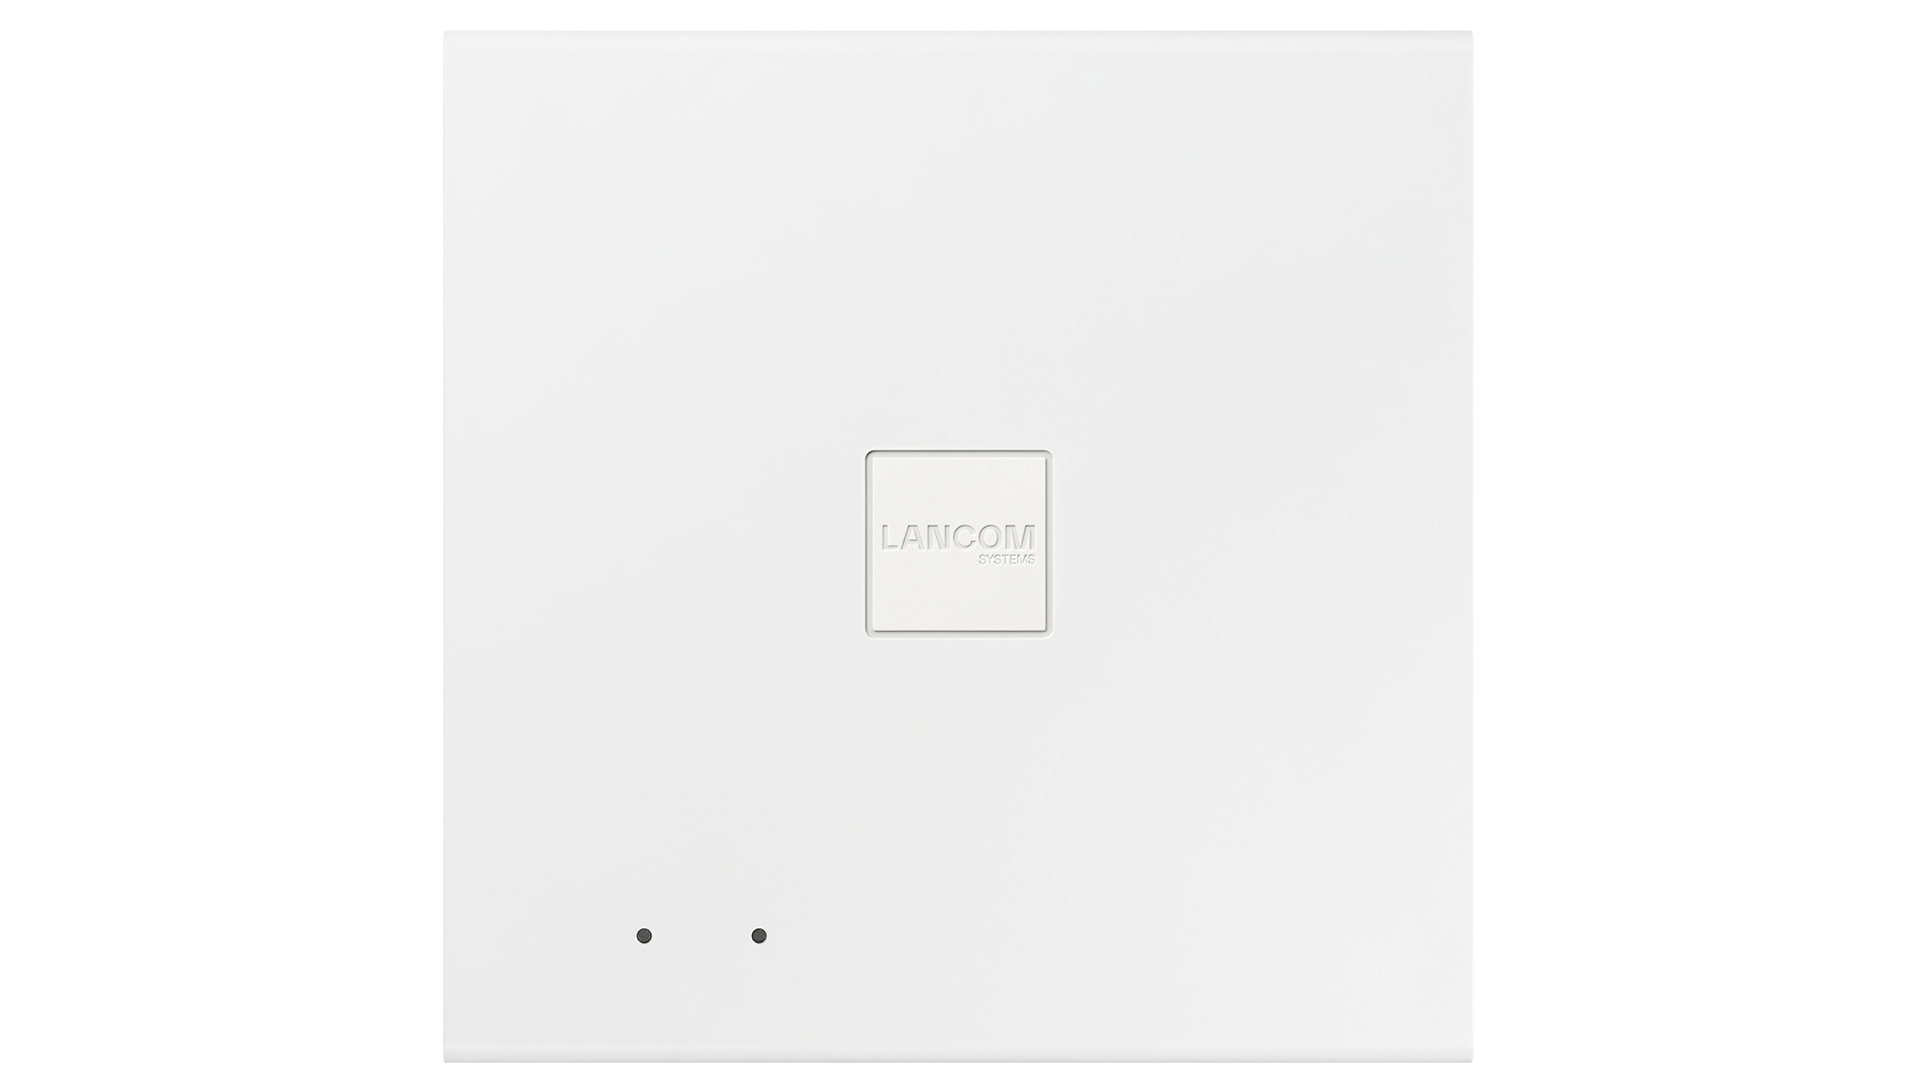 White square access point LANCOM LX-6500E top view